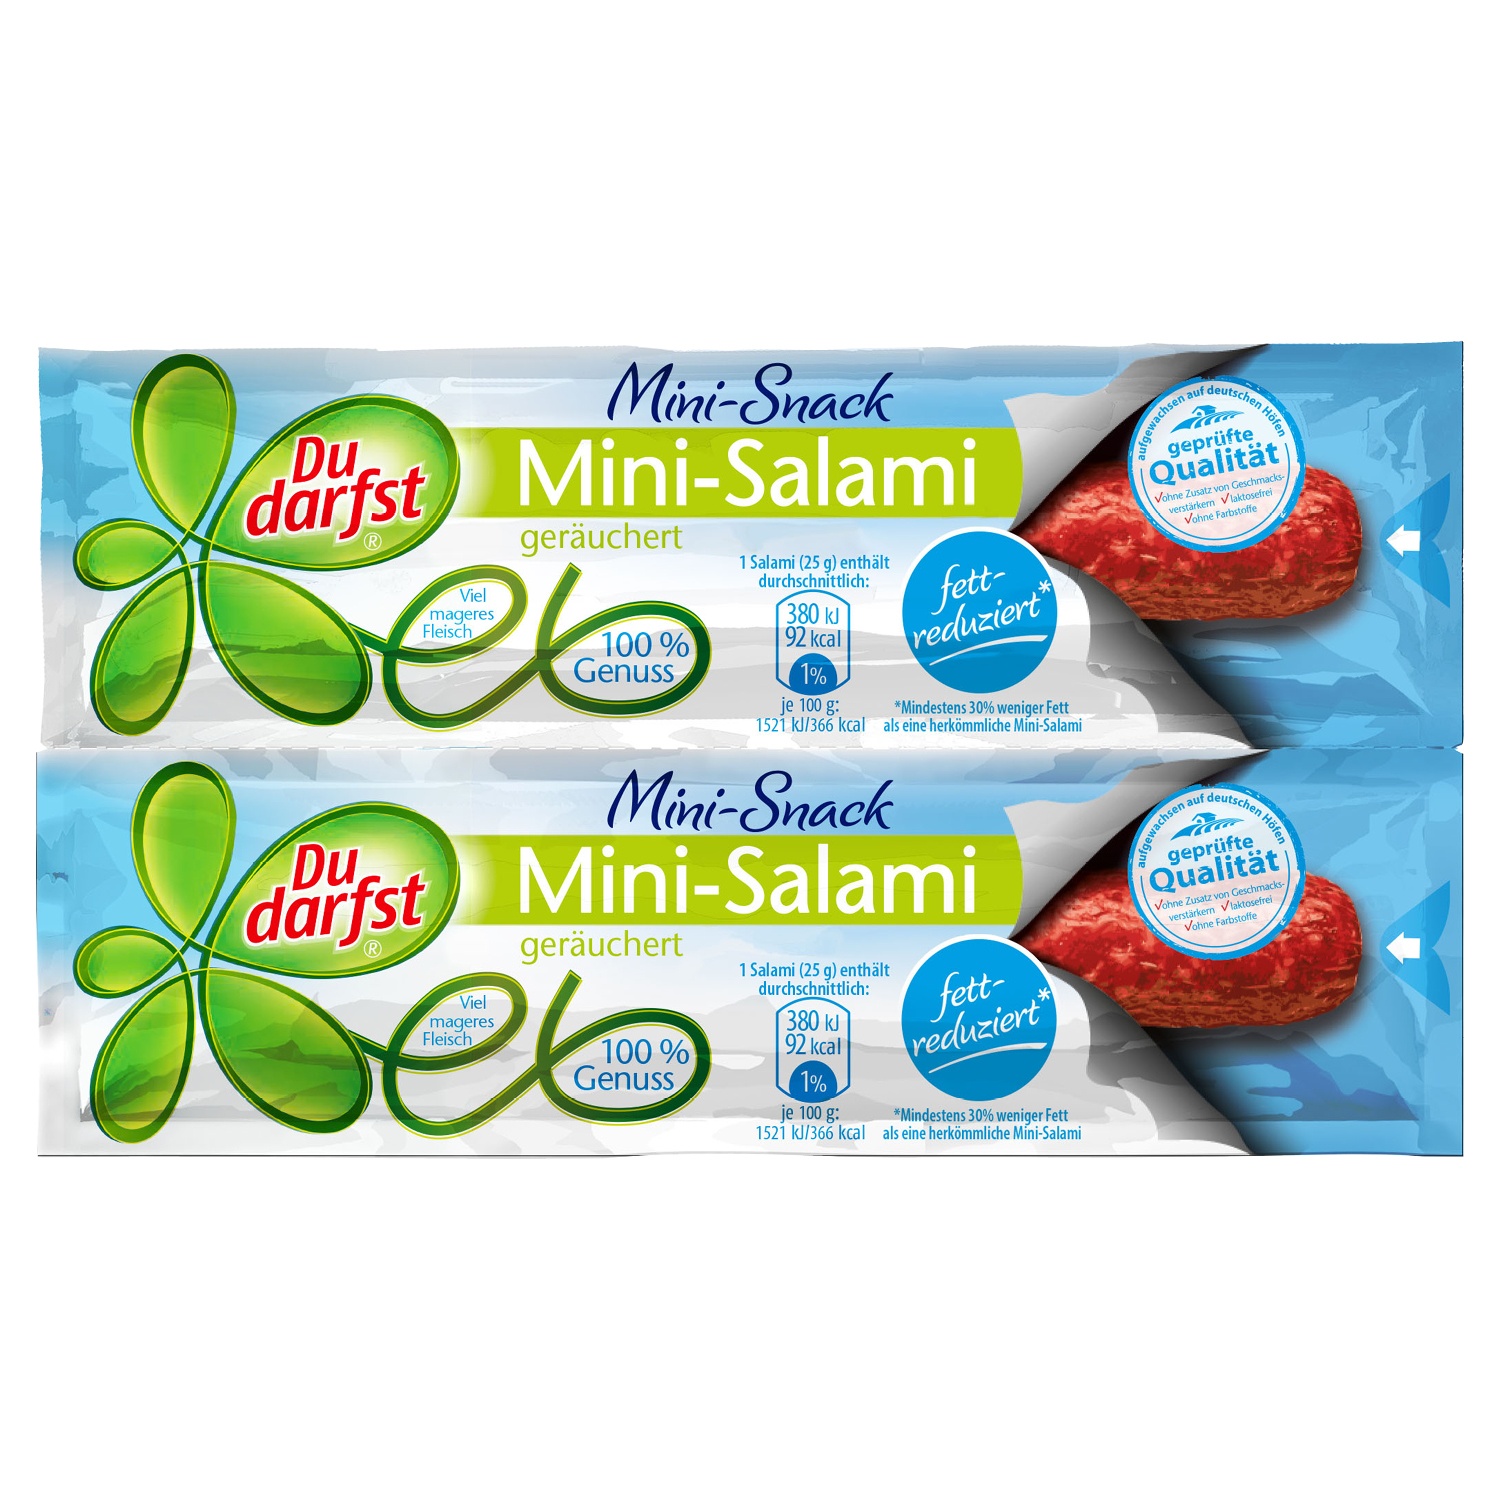 Du darfst® Mini-Salami 50 g